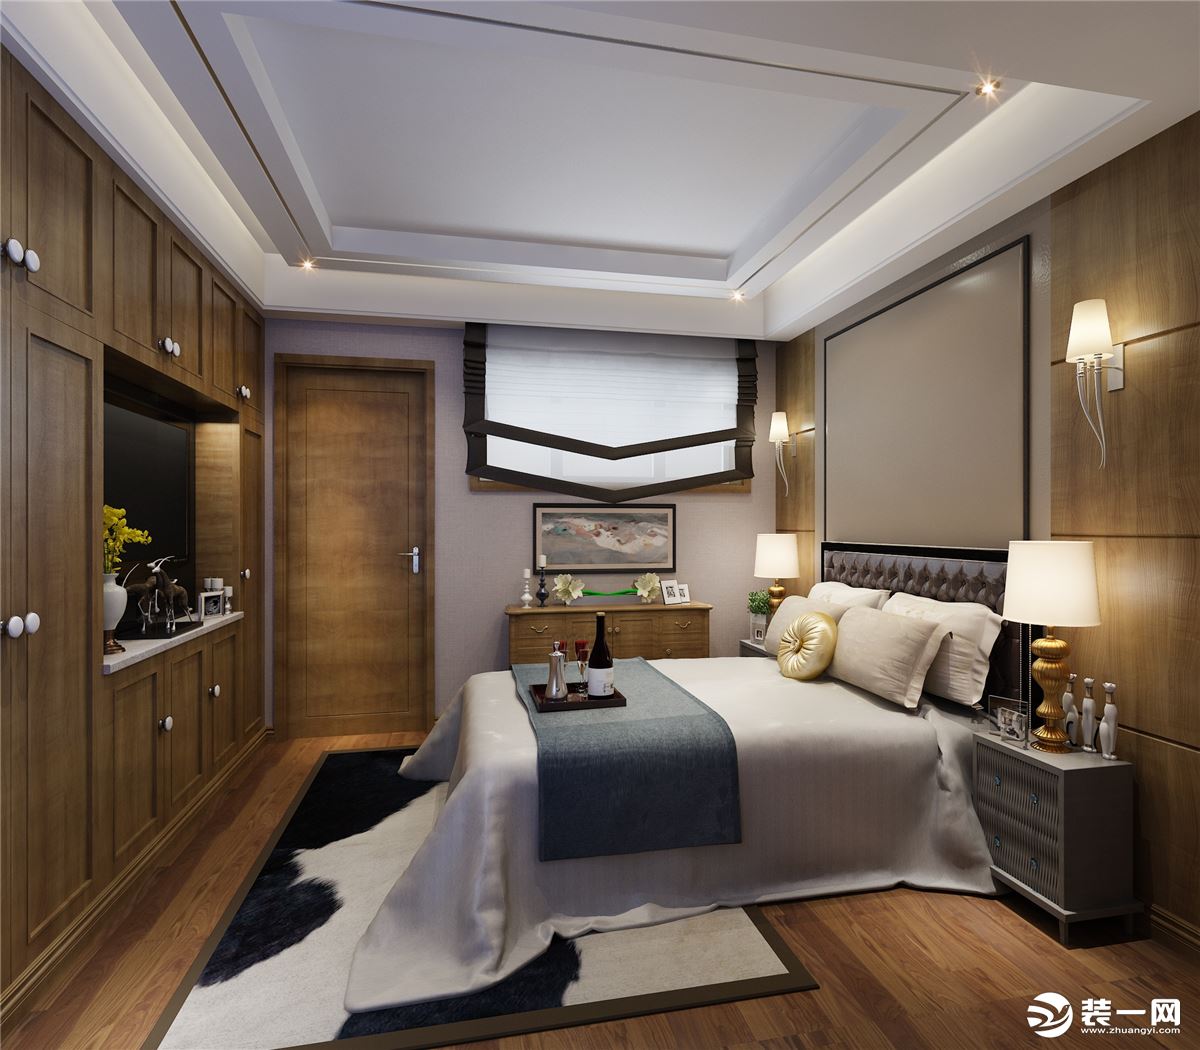 【鲁班装饰】增源航都绿洲复式360平米现代简约风格装修效果图卧室